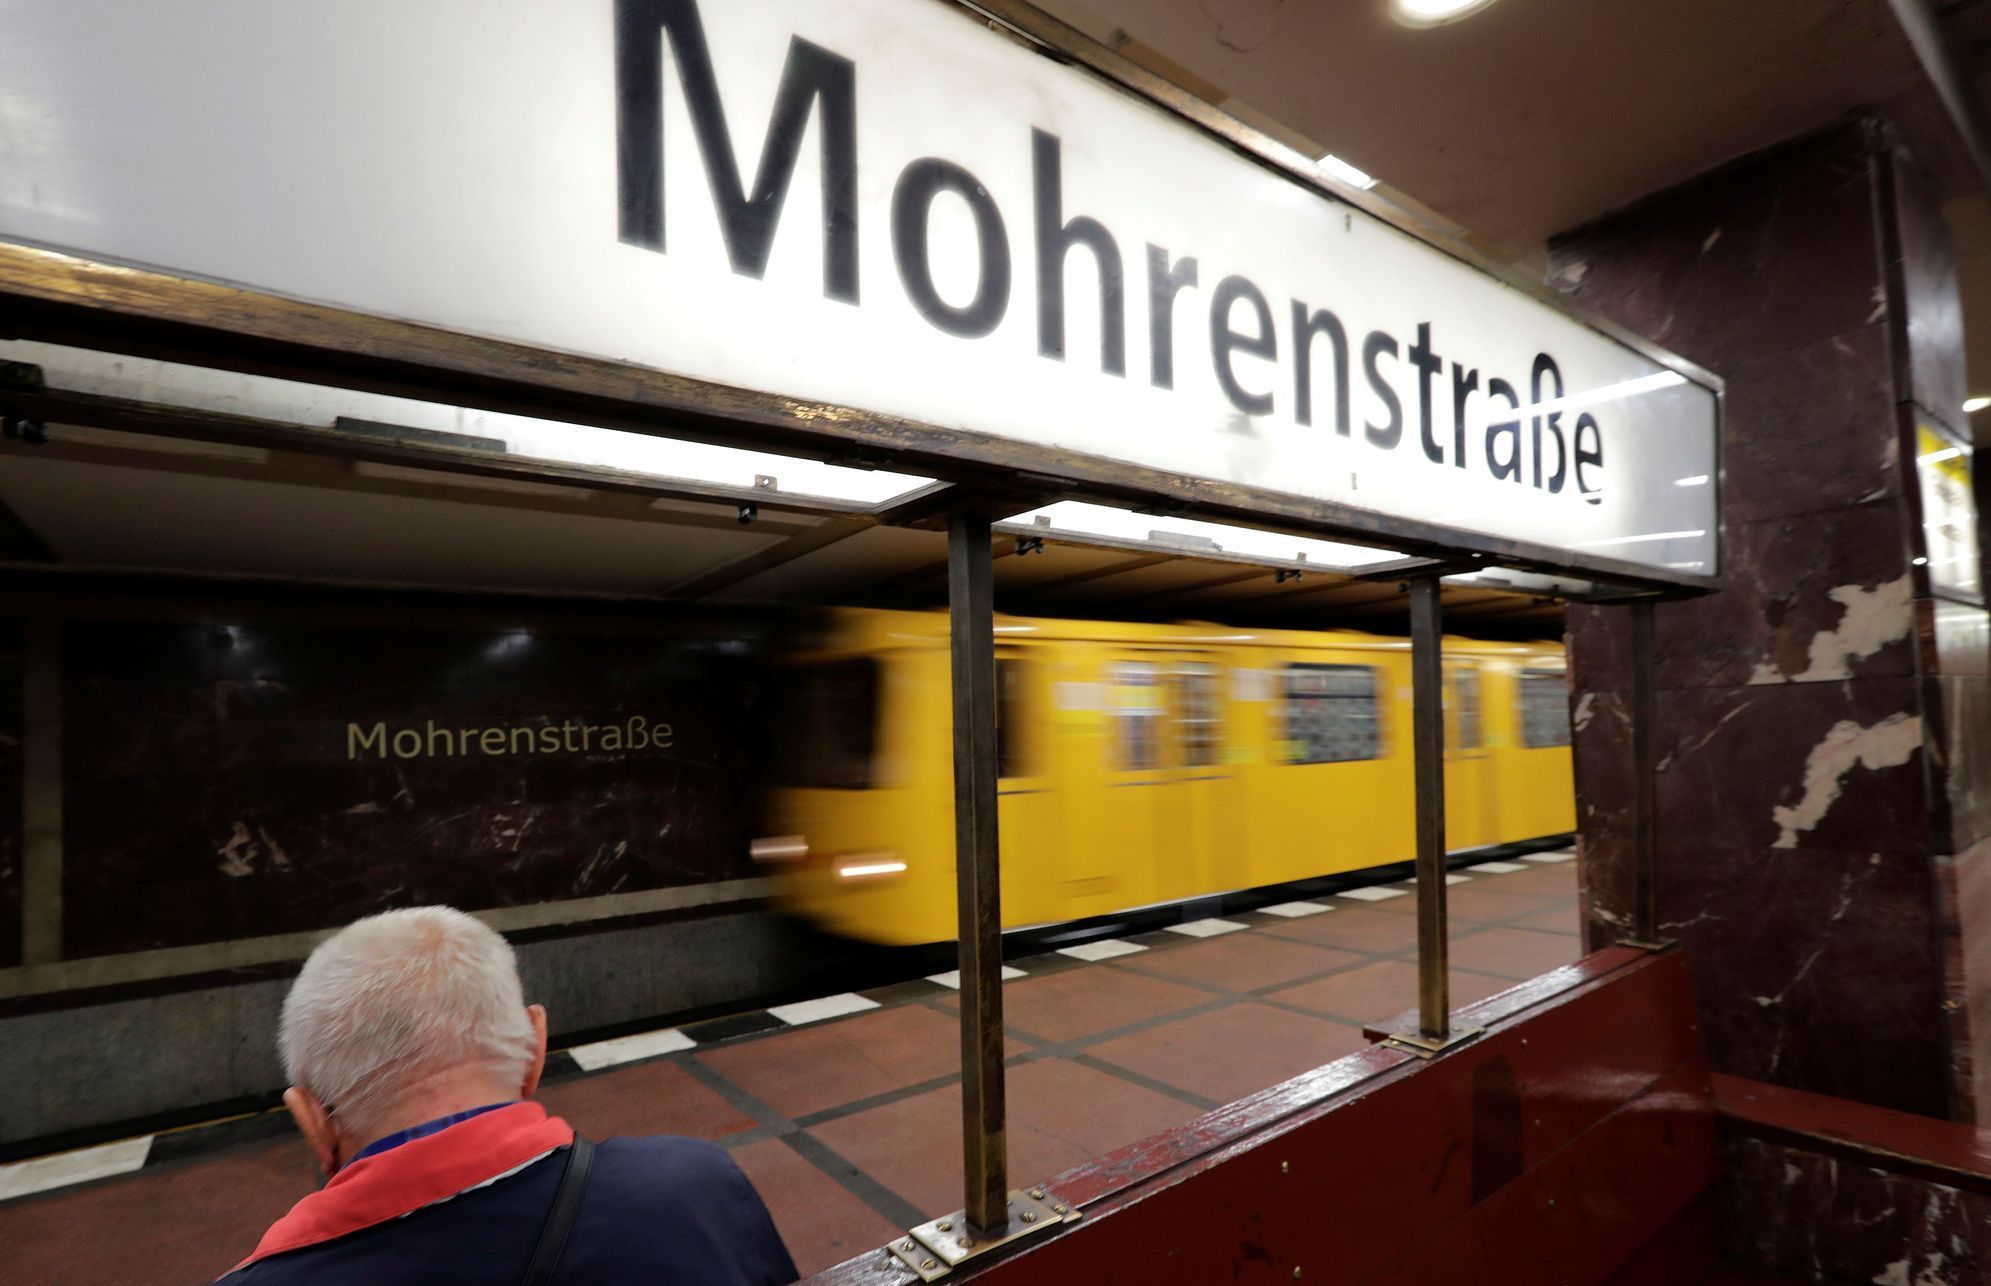 Stanice metra Mohrenstrasse v Berlíně.